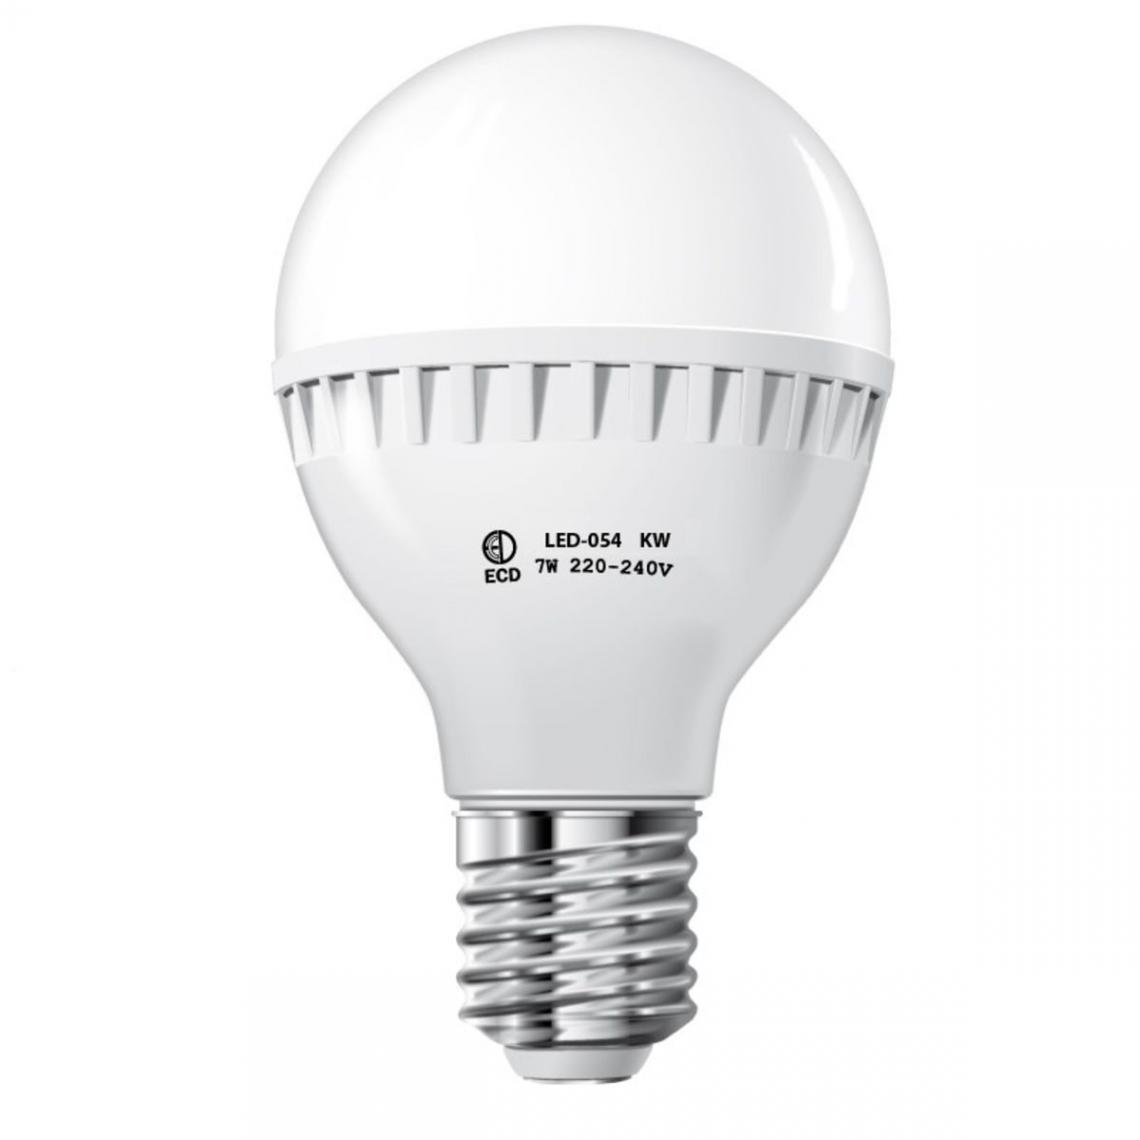 Ecd Germany - ECD Germany 8 x 7W E27 LED Lampe | 6000 Kelvin Blanc Froid | 458 Lumens | 220-240 V | Remplace une Ampoule Halogène de 45 W | Ampoules à Économie d'Énergie - Ampoules LED